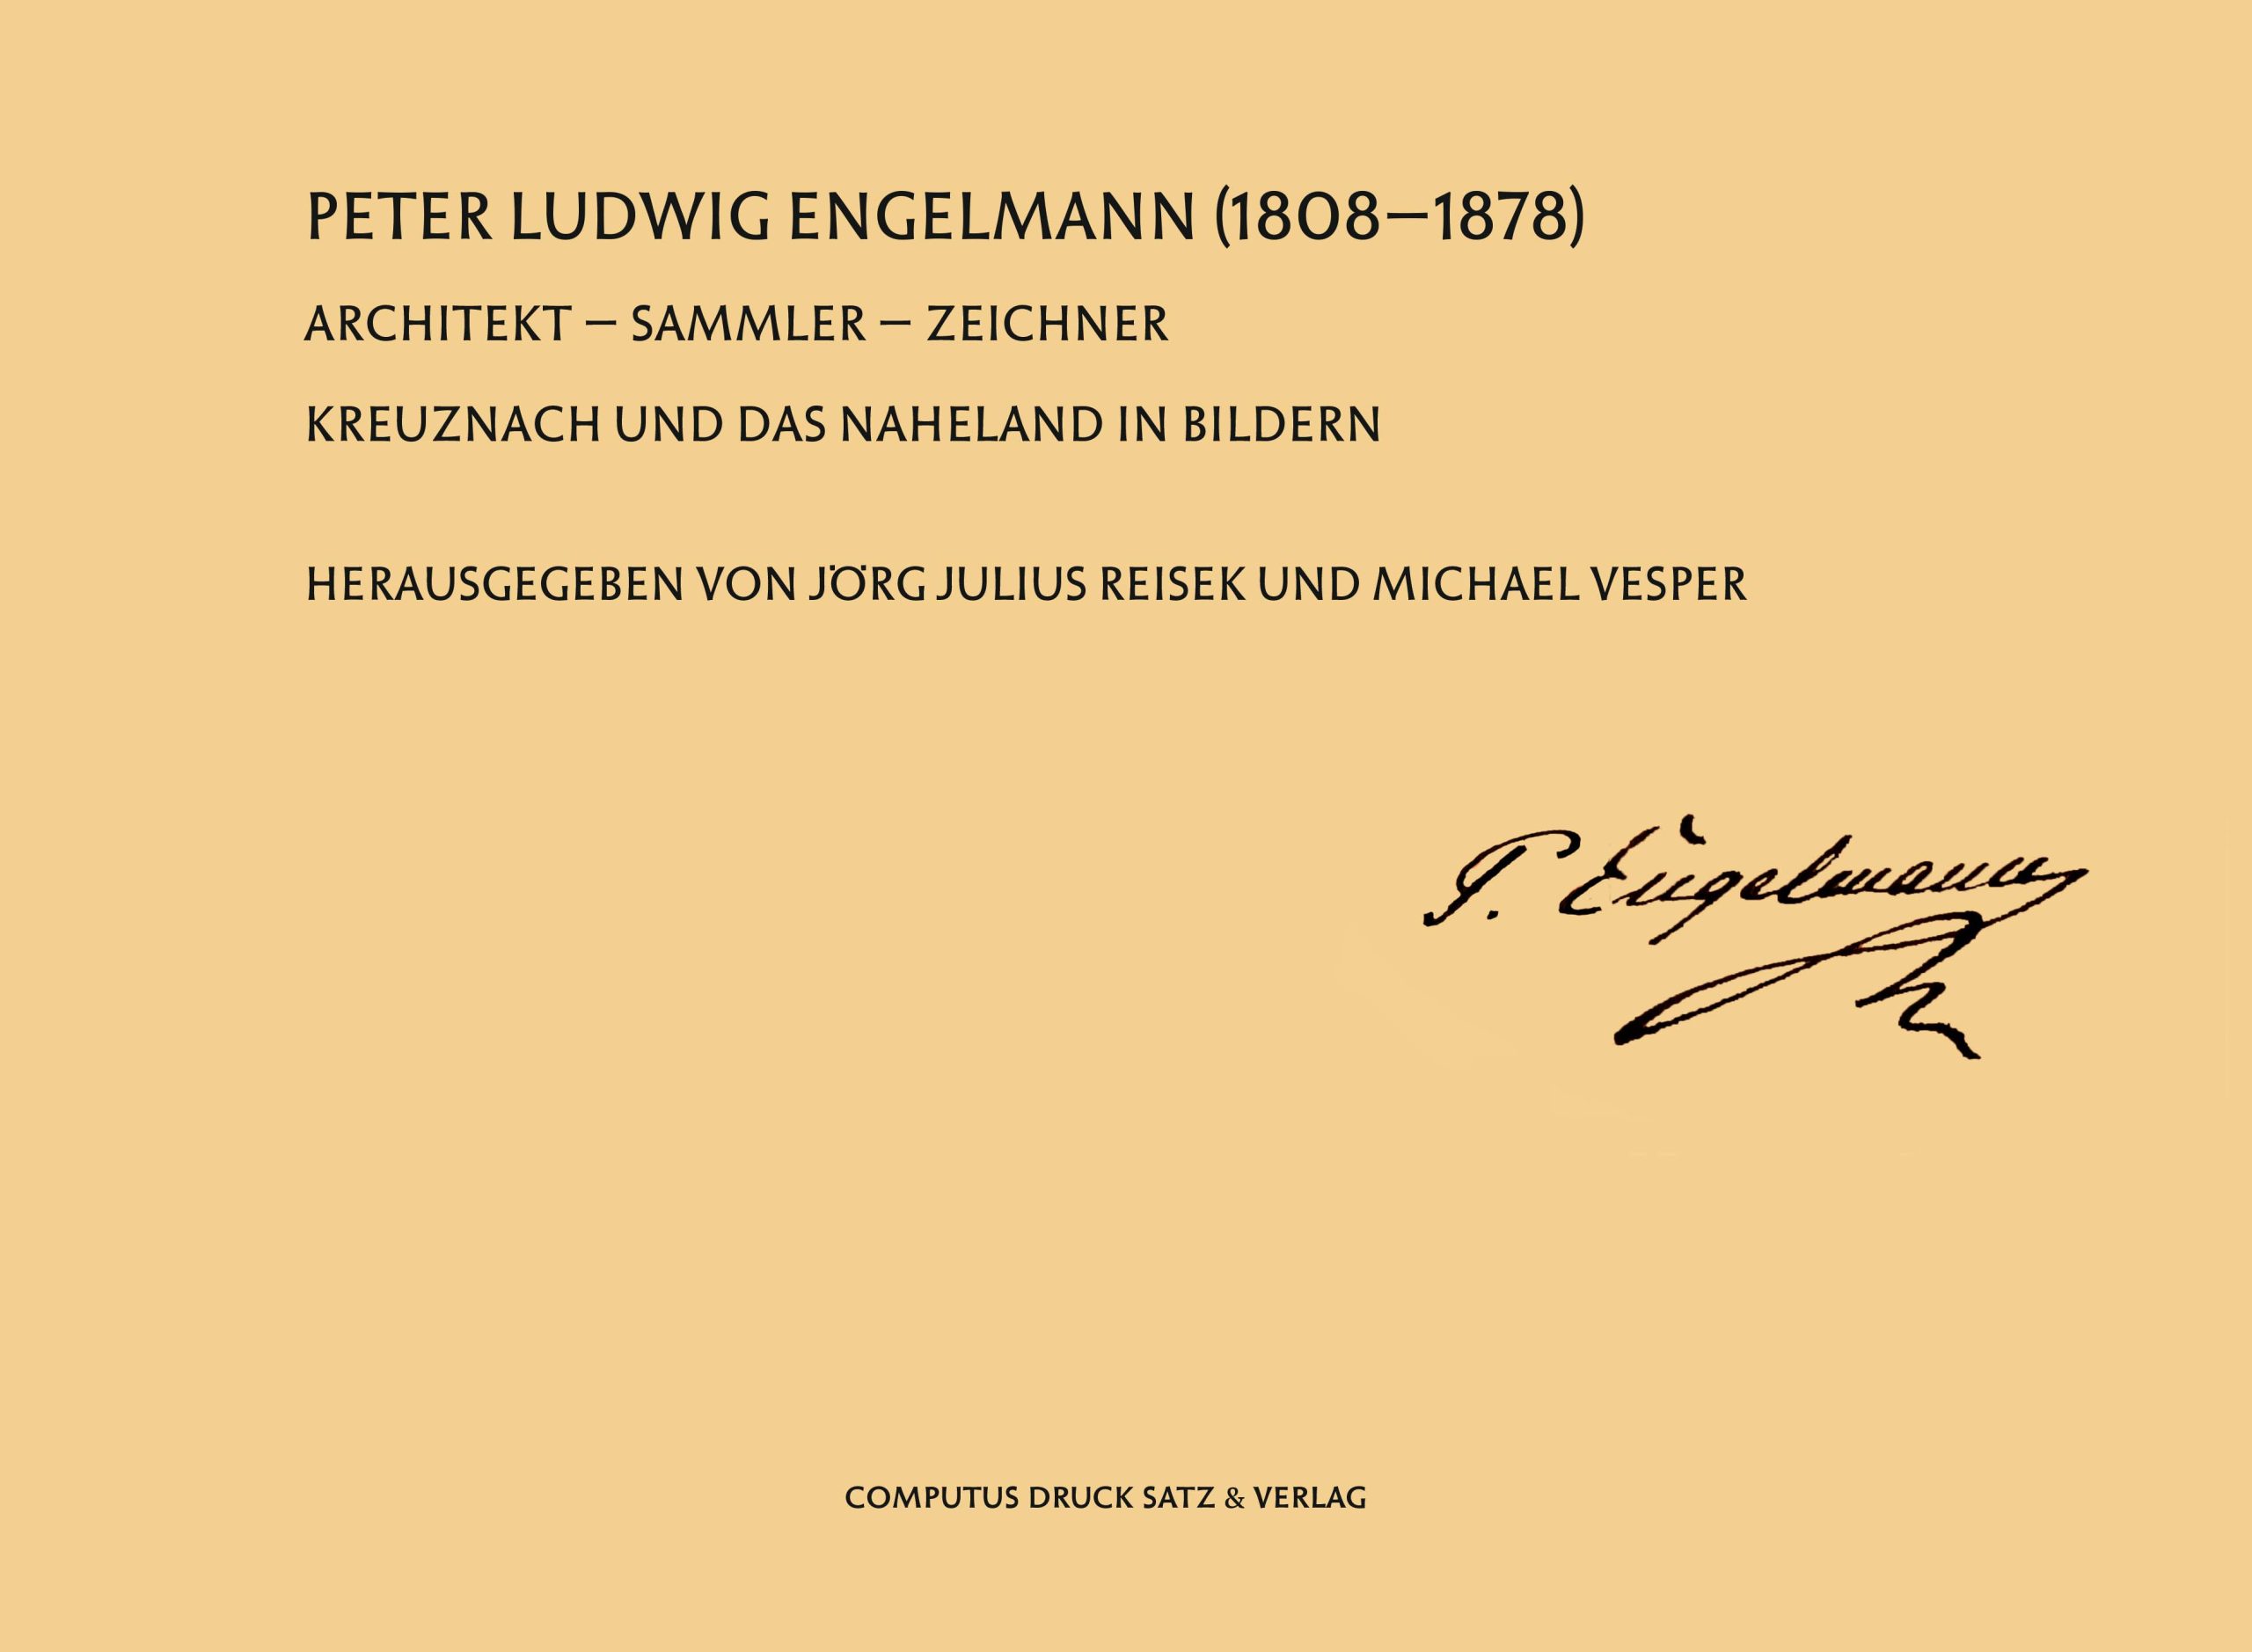 Coverbild der Neuerscheinung zu Peter Ludwig Engelmann 